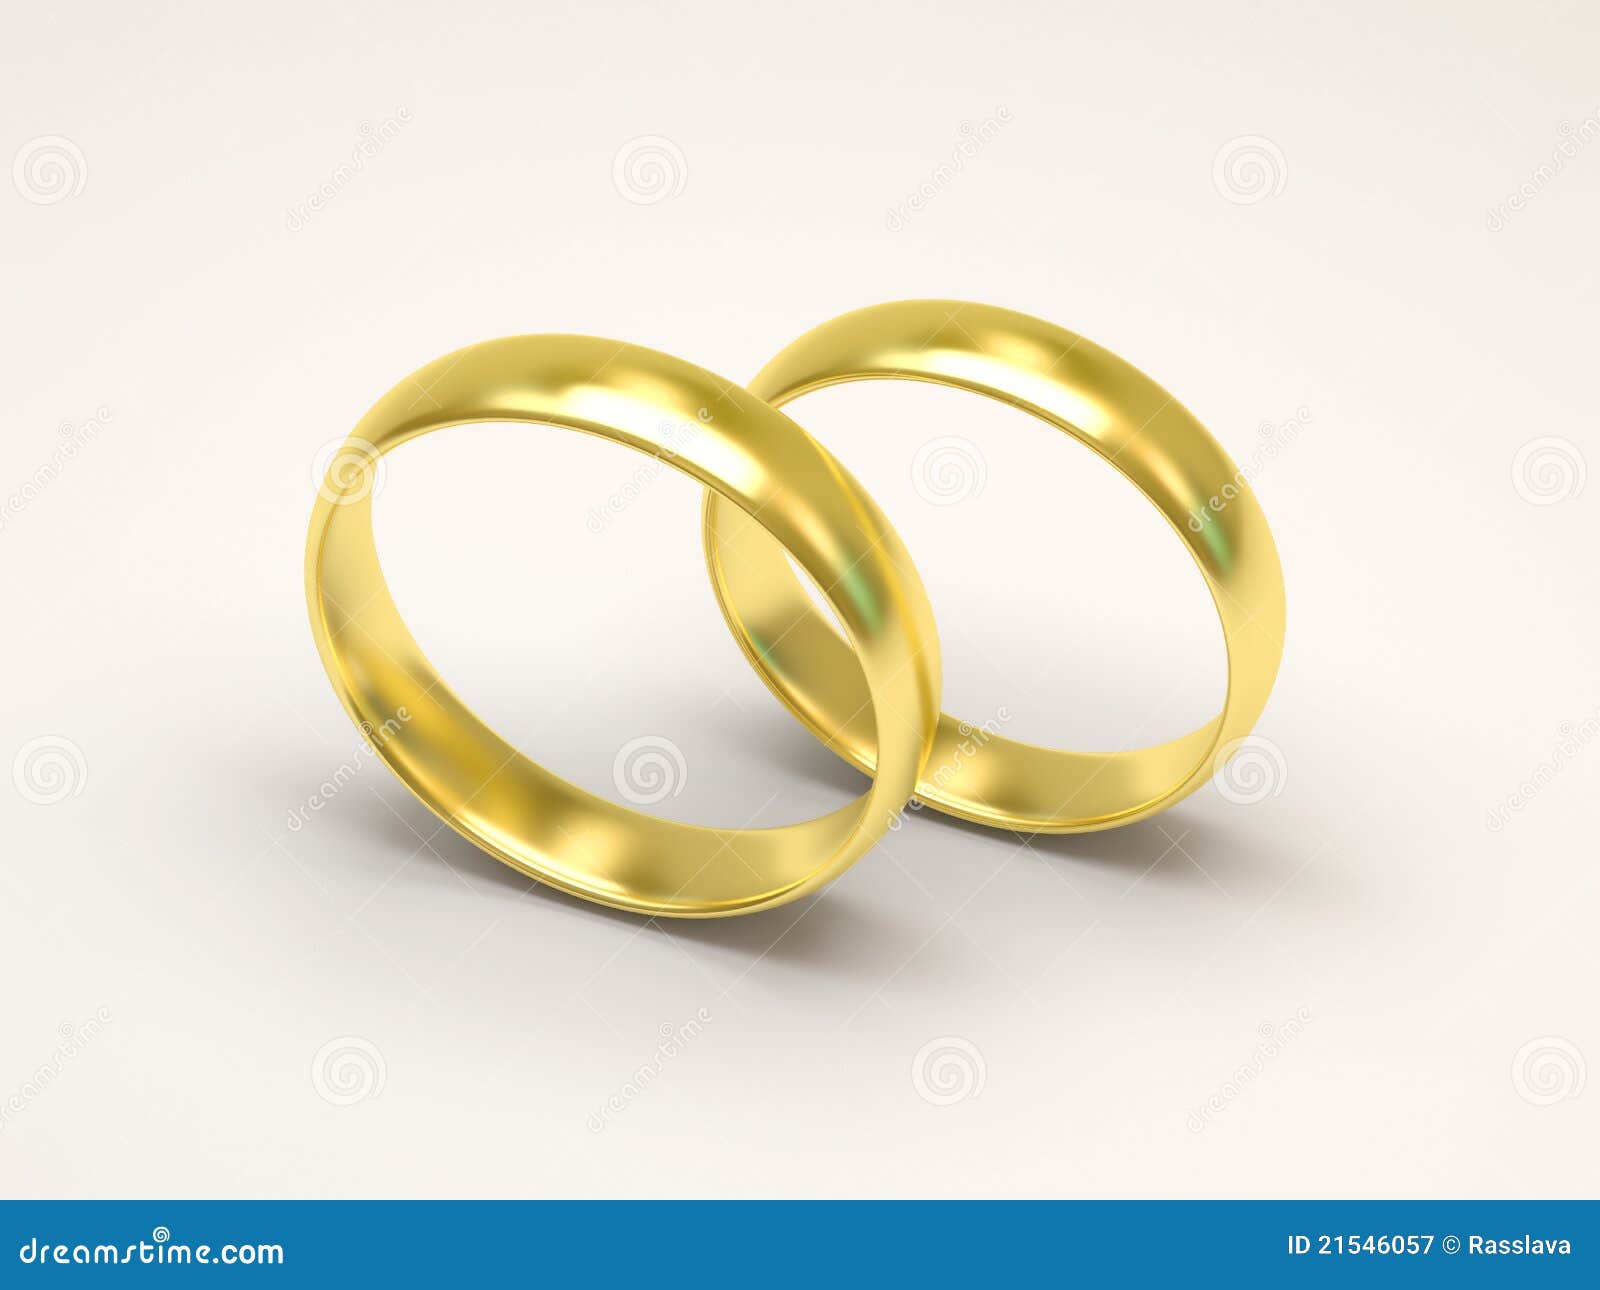 anillos de bodas de oro en el fondo blanco 21546057